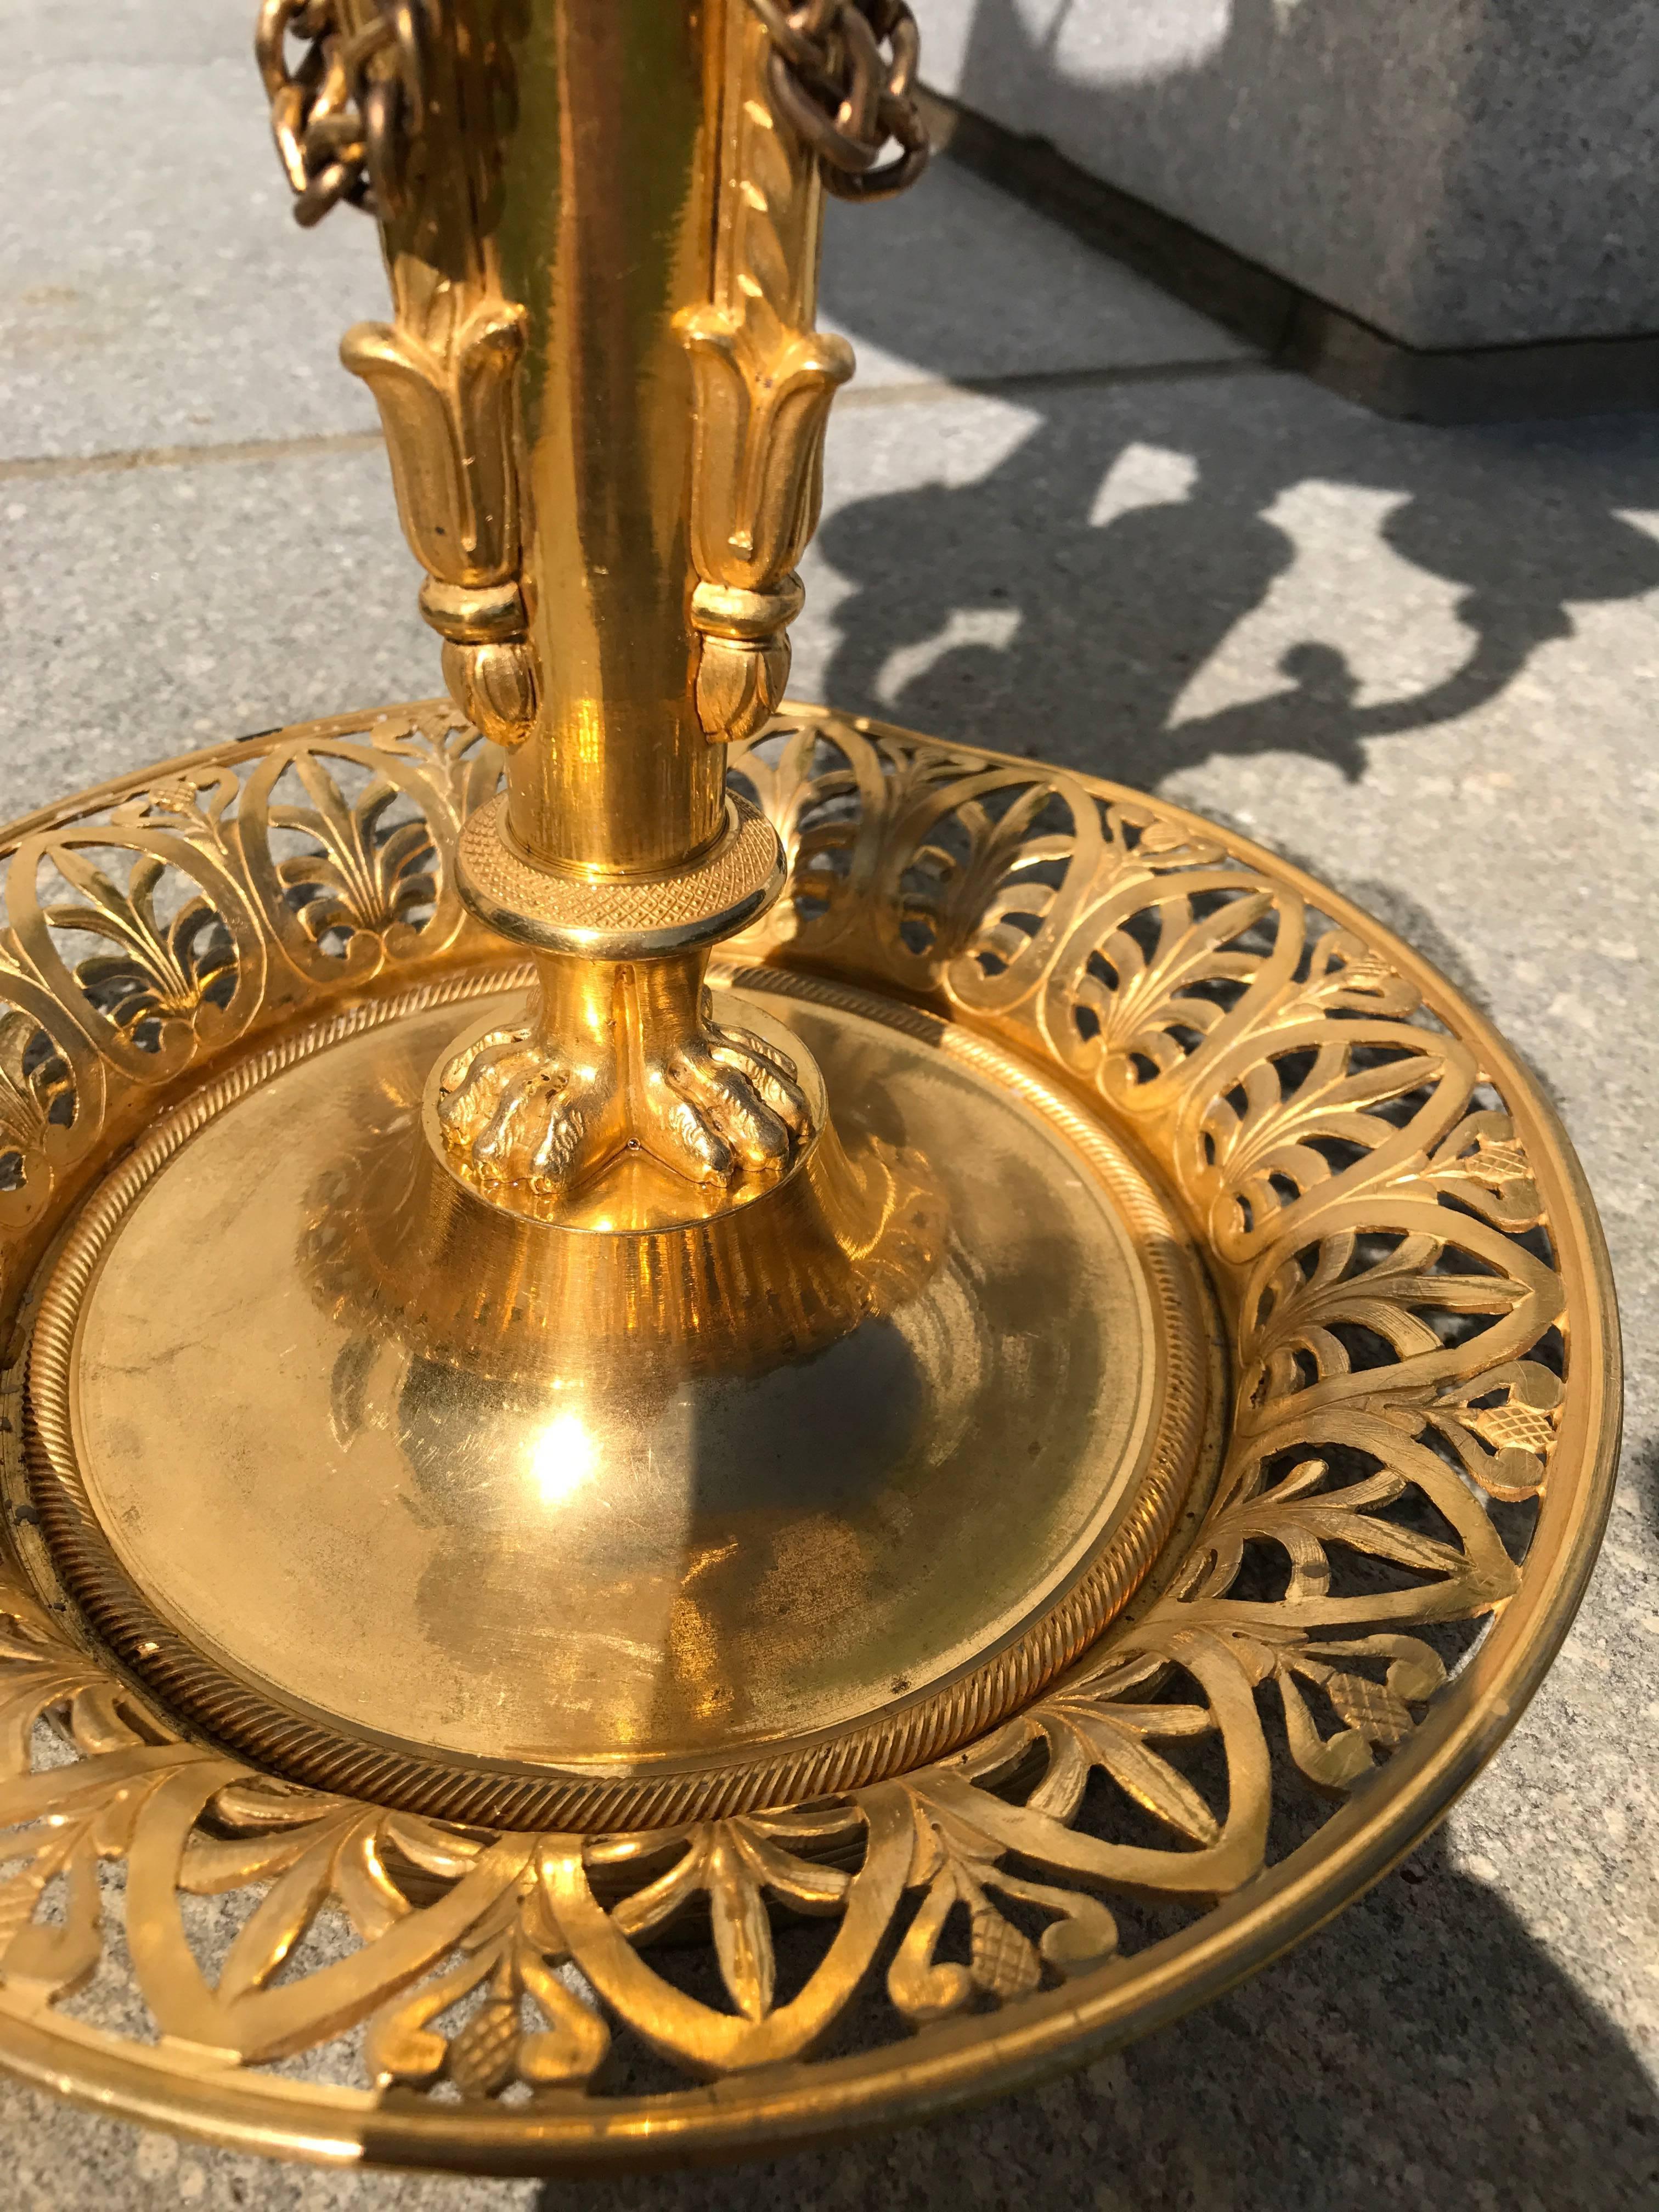 Cette lampe Bouillotte française de qualité supérieure est ornée de bronze doré et d'un abat-jour tôle original tenu par des cygnes.
La base, qui devait contenir les pièces de jeu de la Bouillotte, est découpée en athéniennes et finement